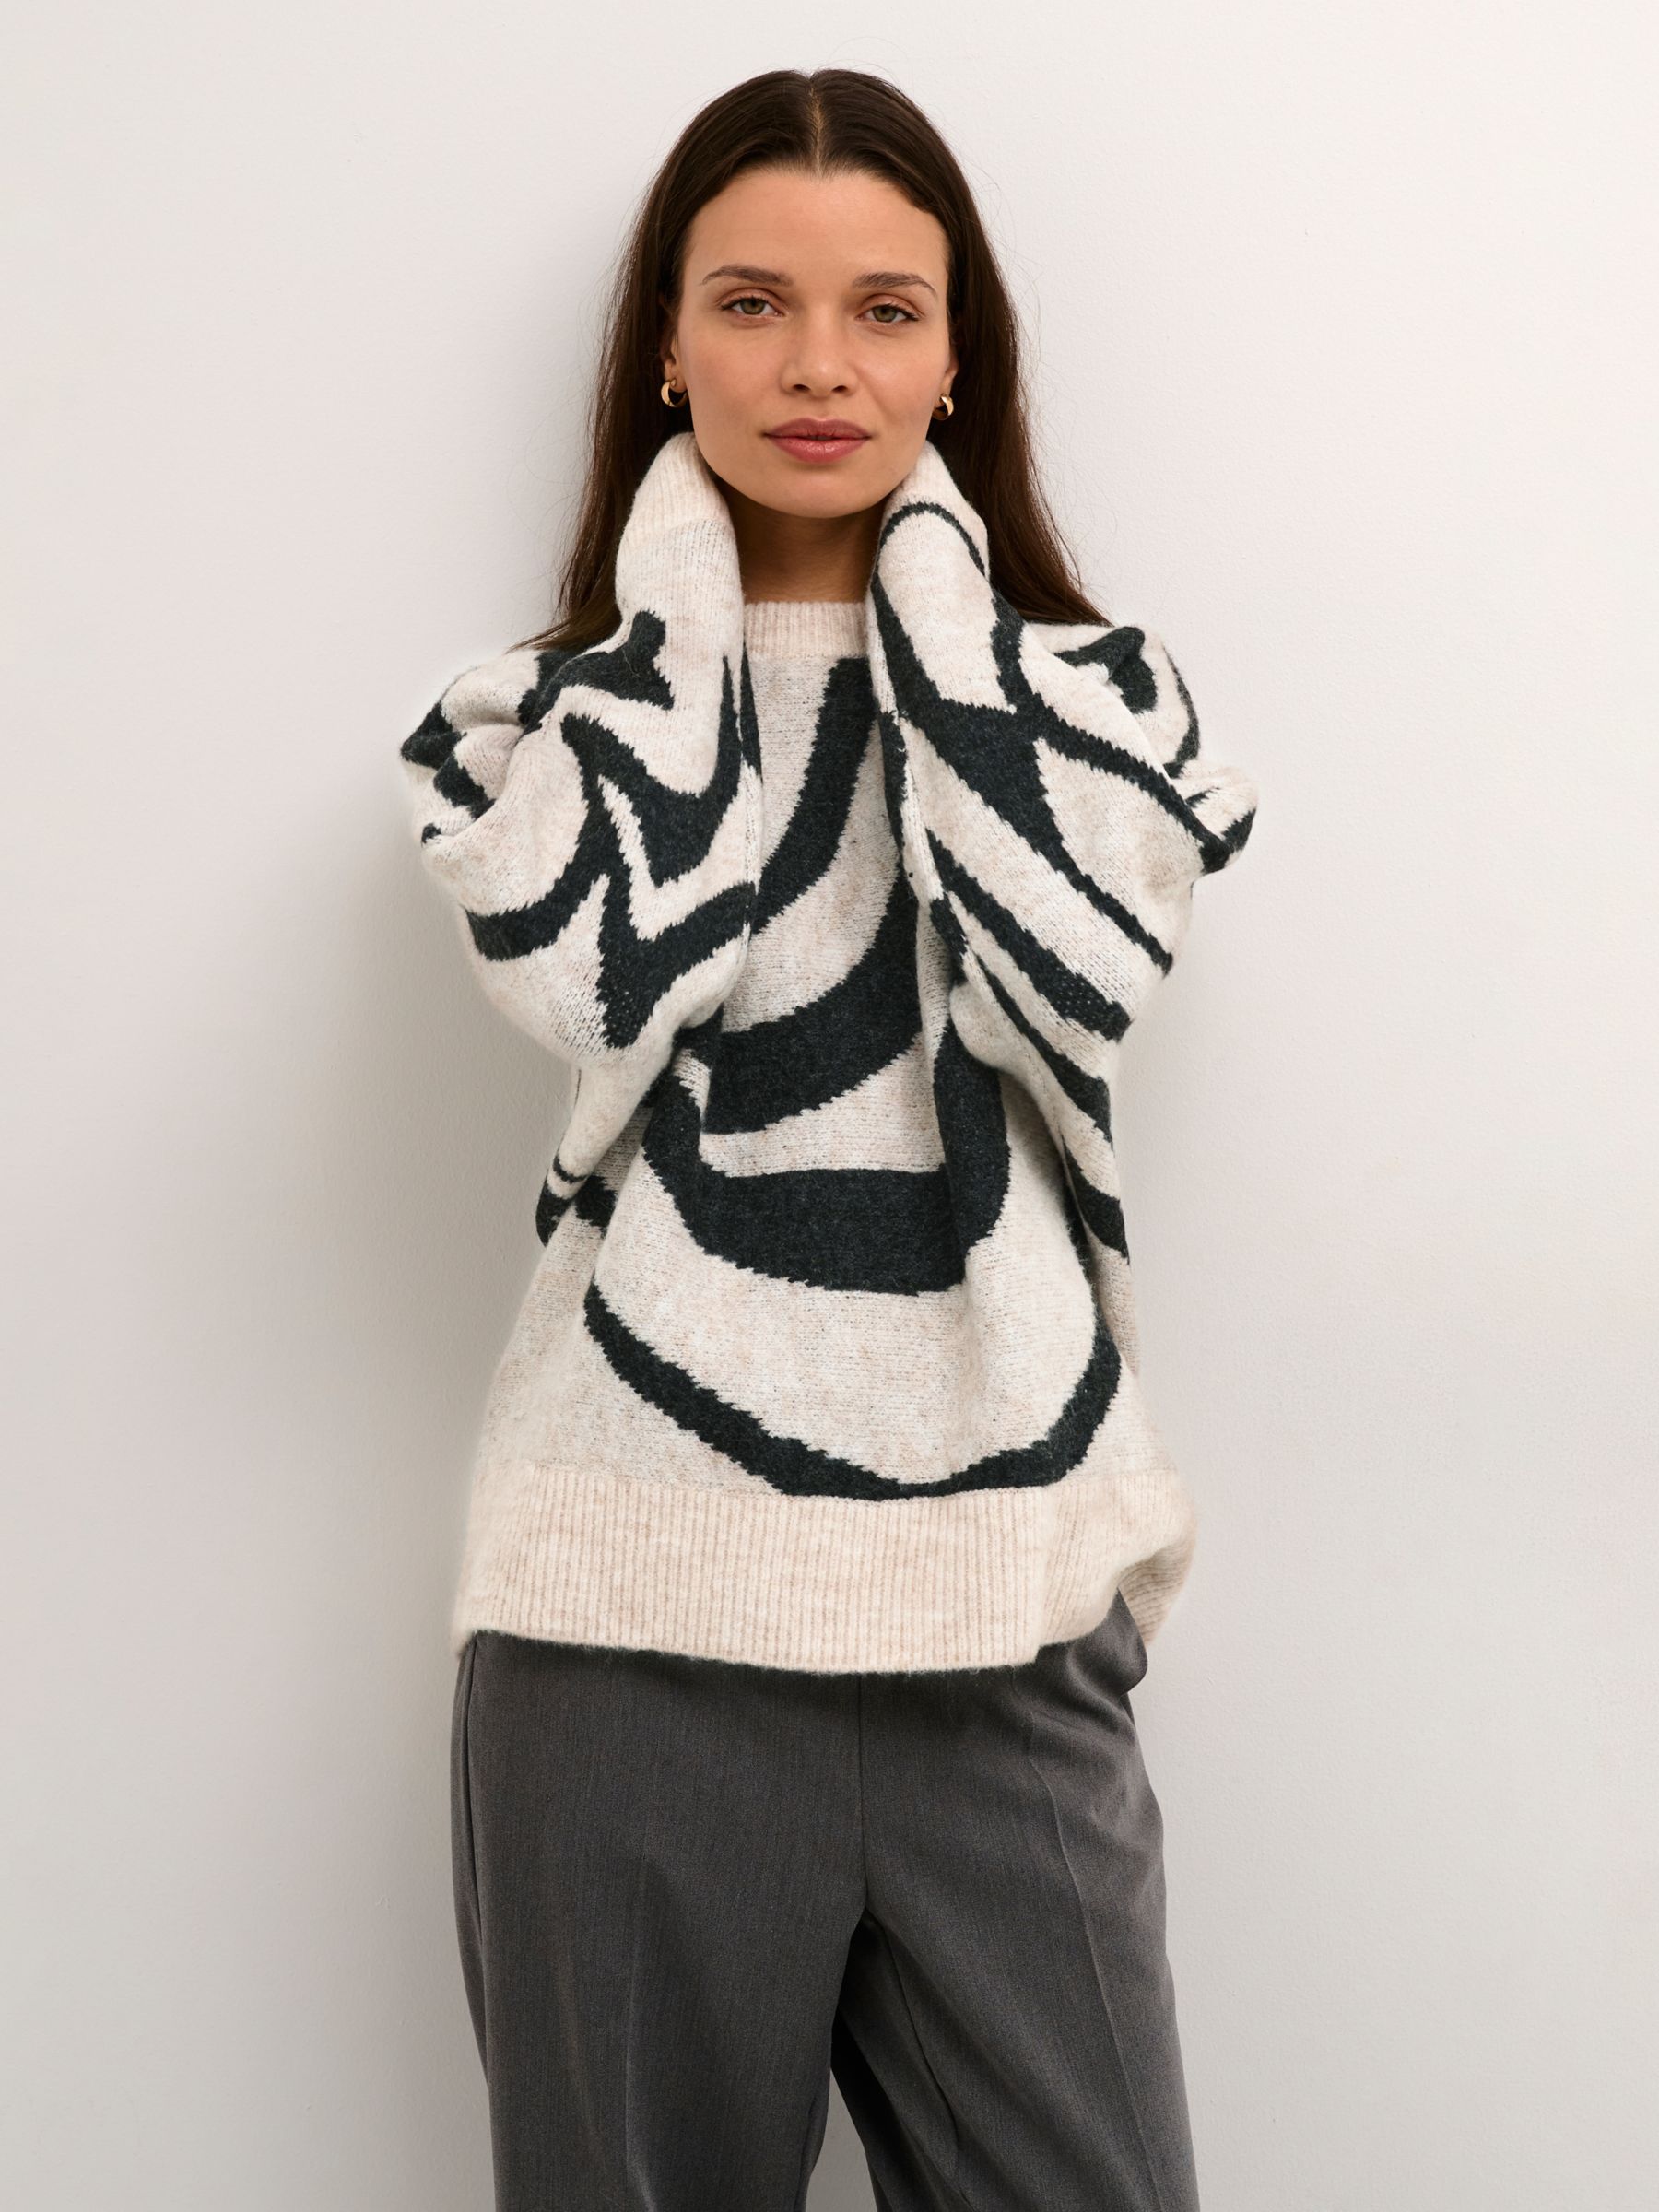 Buy KAFFE Birthe Graphic Knitted Jumper, Light Sand Melange Online at johnlewis.com